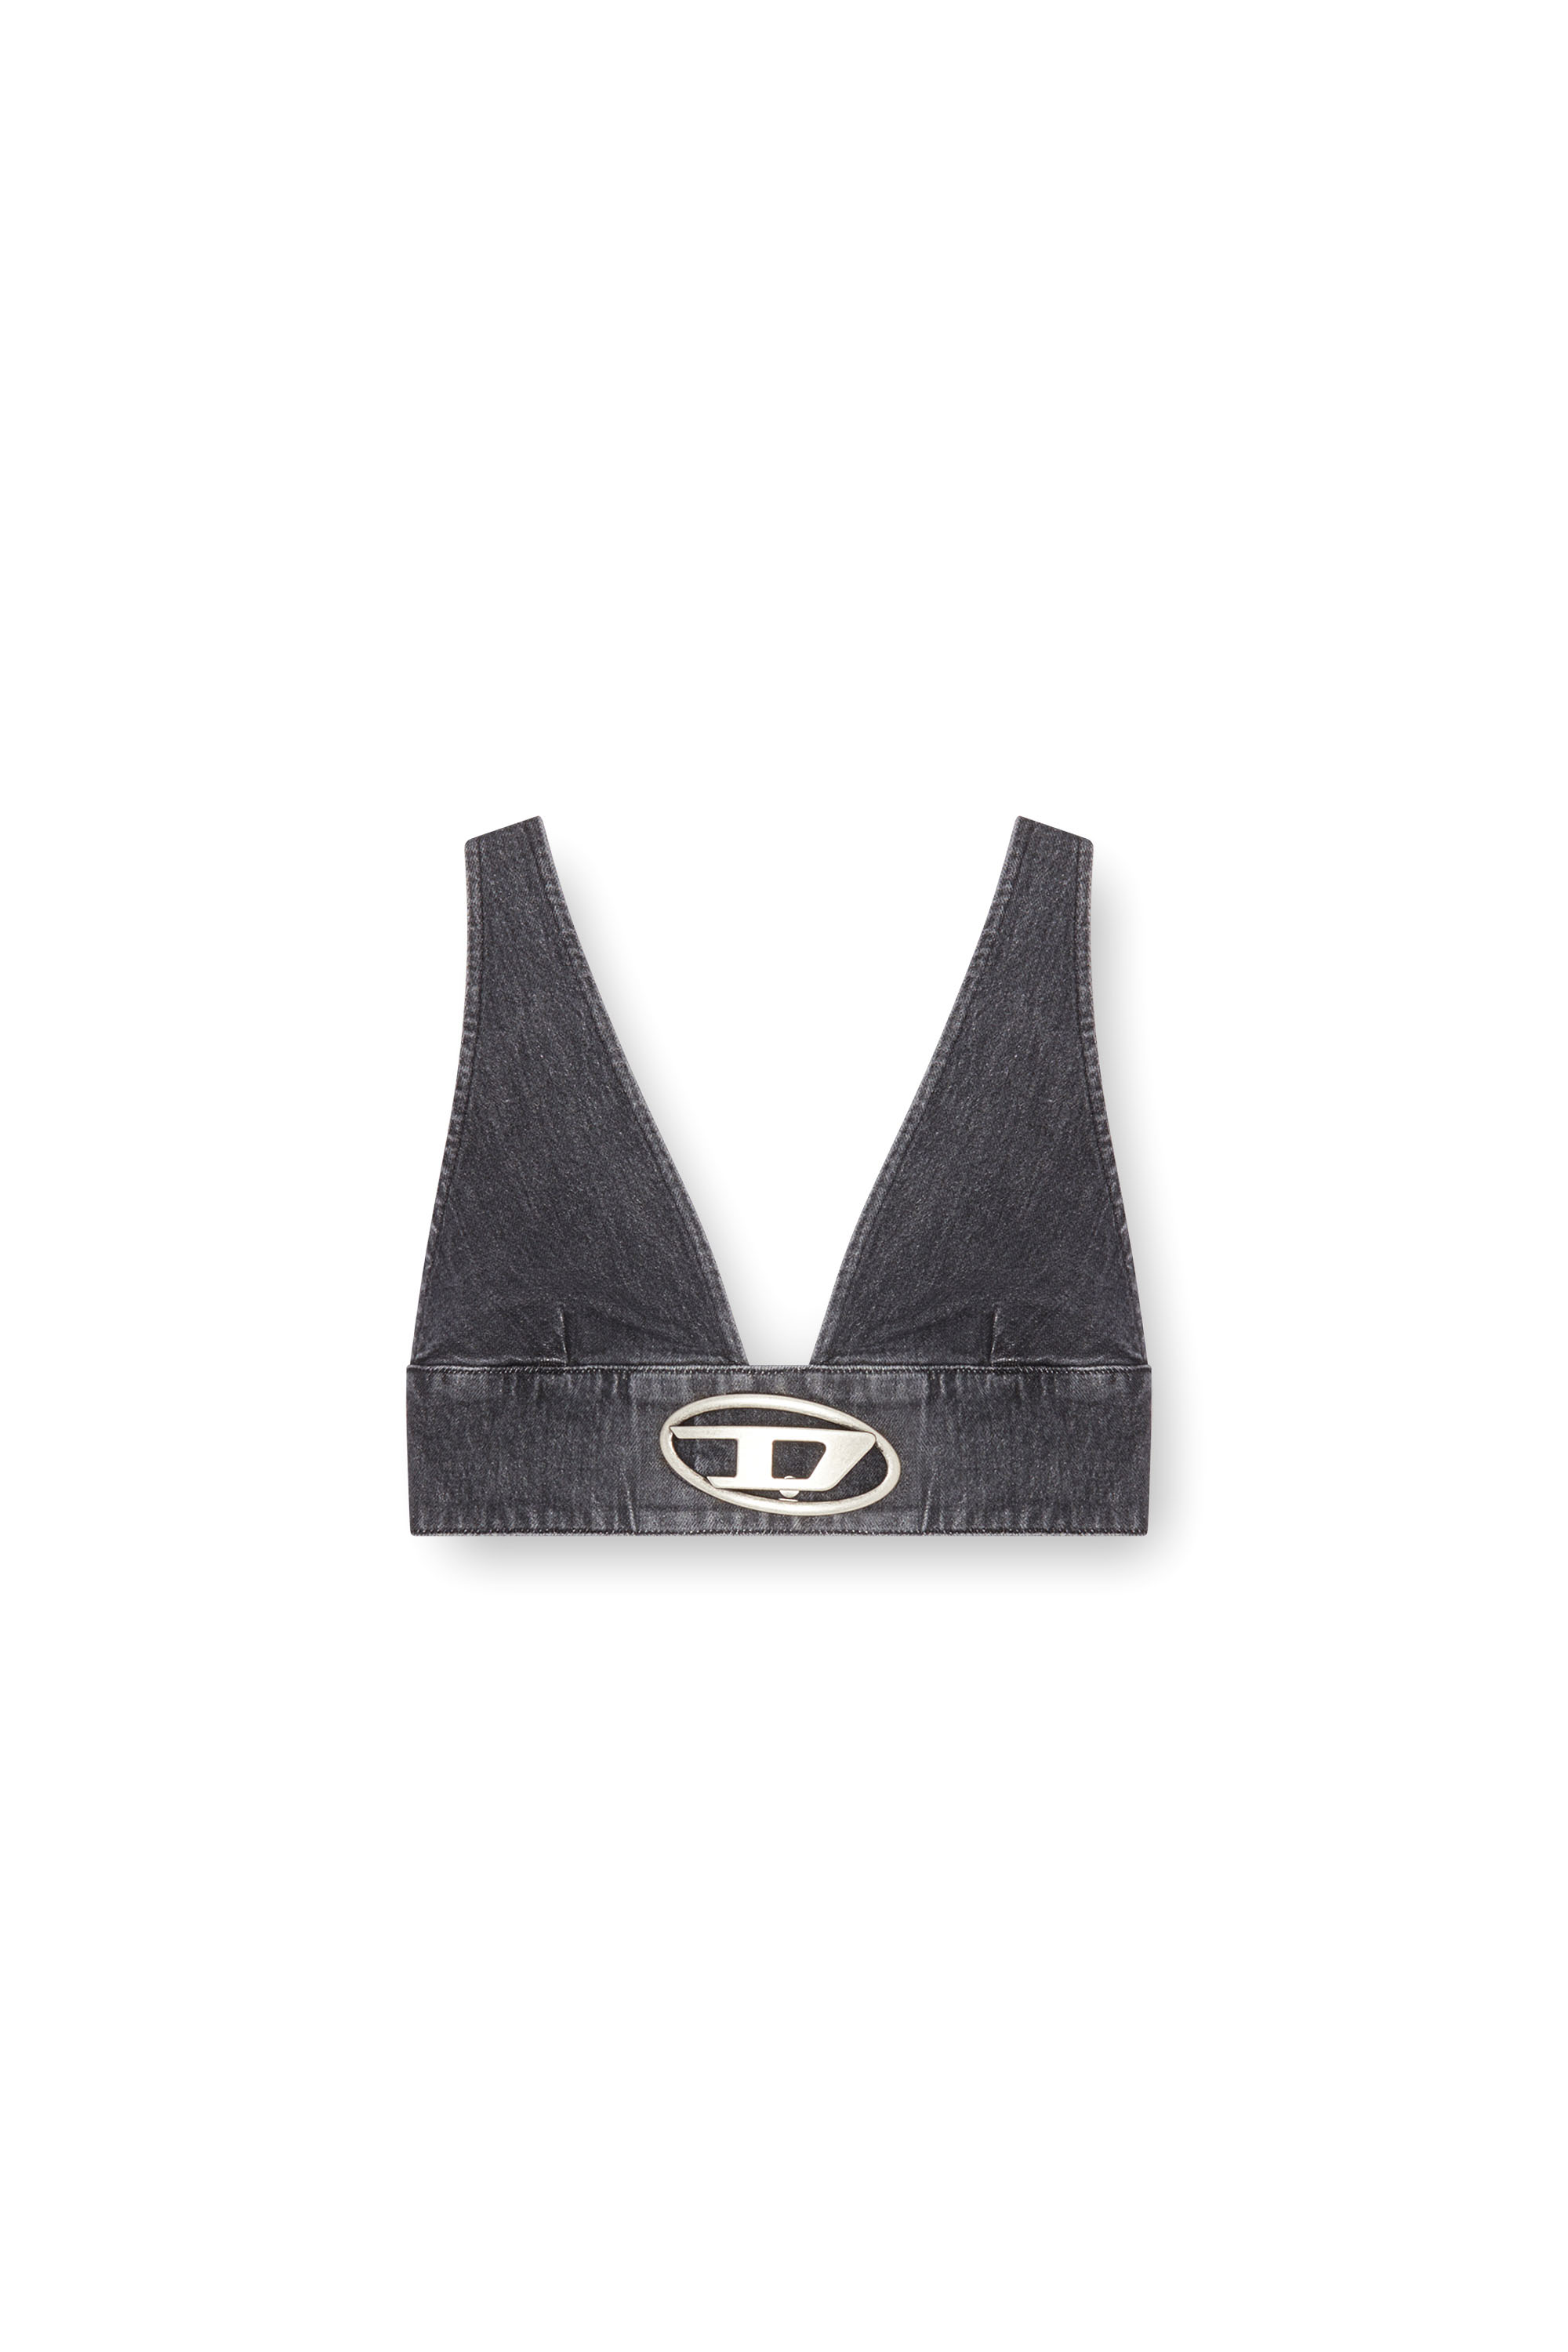 Diesel - DE-ELLY-S, Mujer Sujetador top en denim con placa Oval D in Negro - Image 3